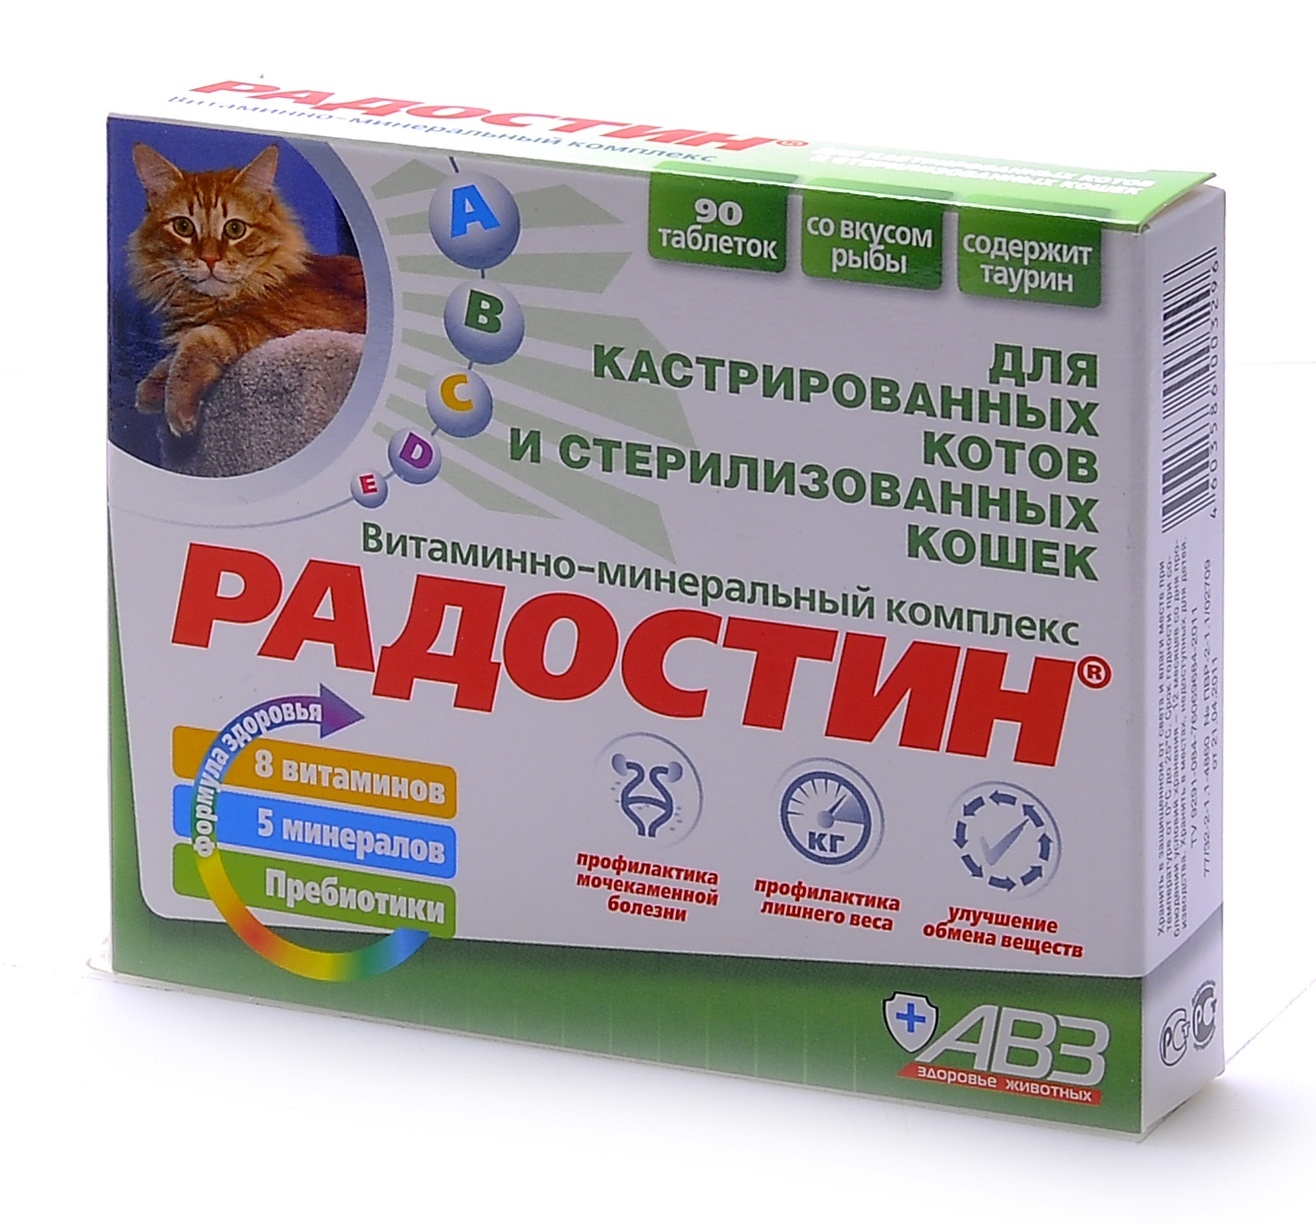 Агроветзащита Агроветзащита Радостин добавка витаминно-минеральная для кастрированных котов, 90 табл. (62 г) 24429